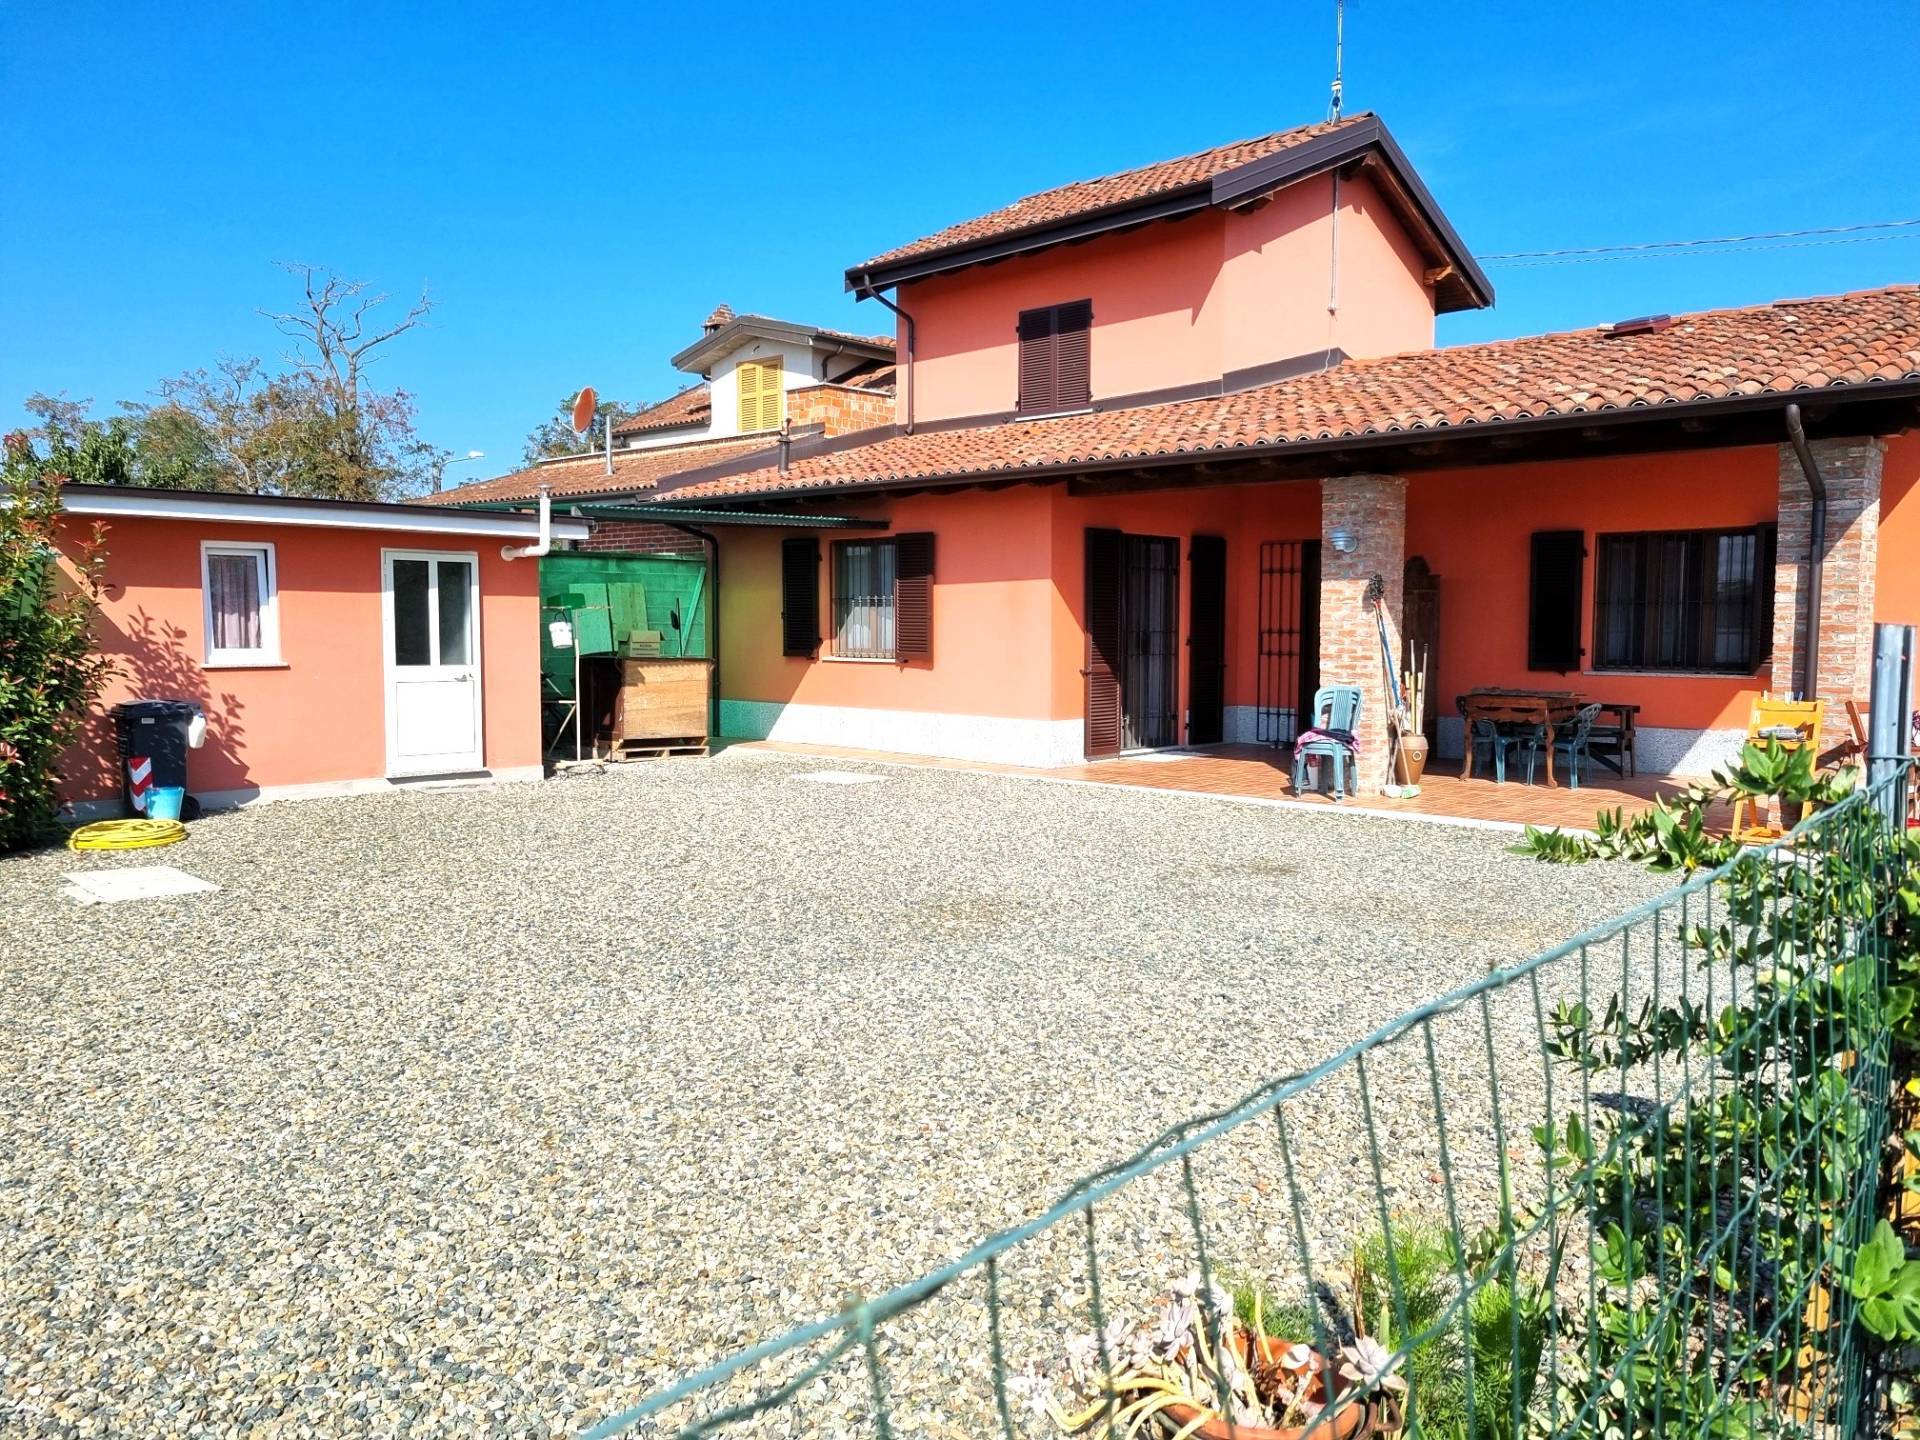 Casa indipendente in vendita a Castelceriolo, Alessandria (AL)